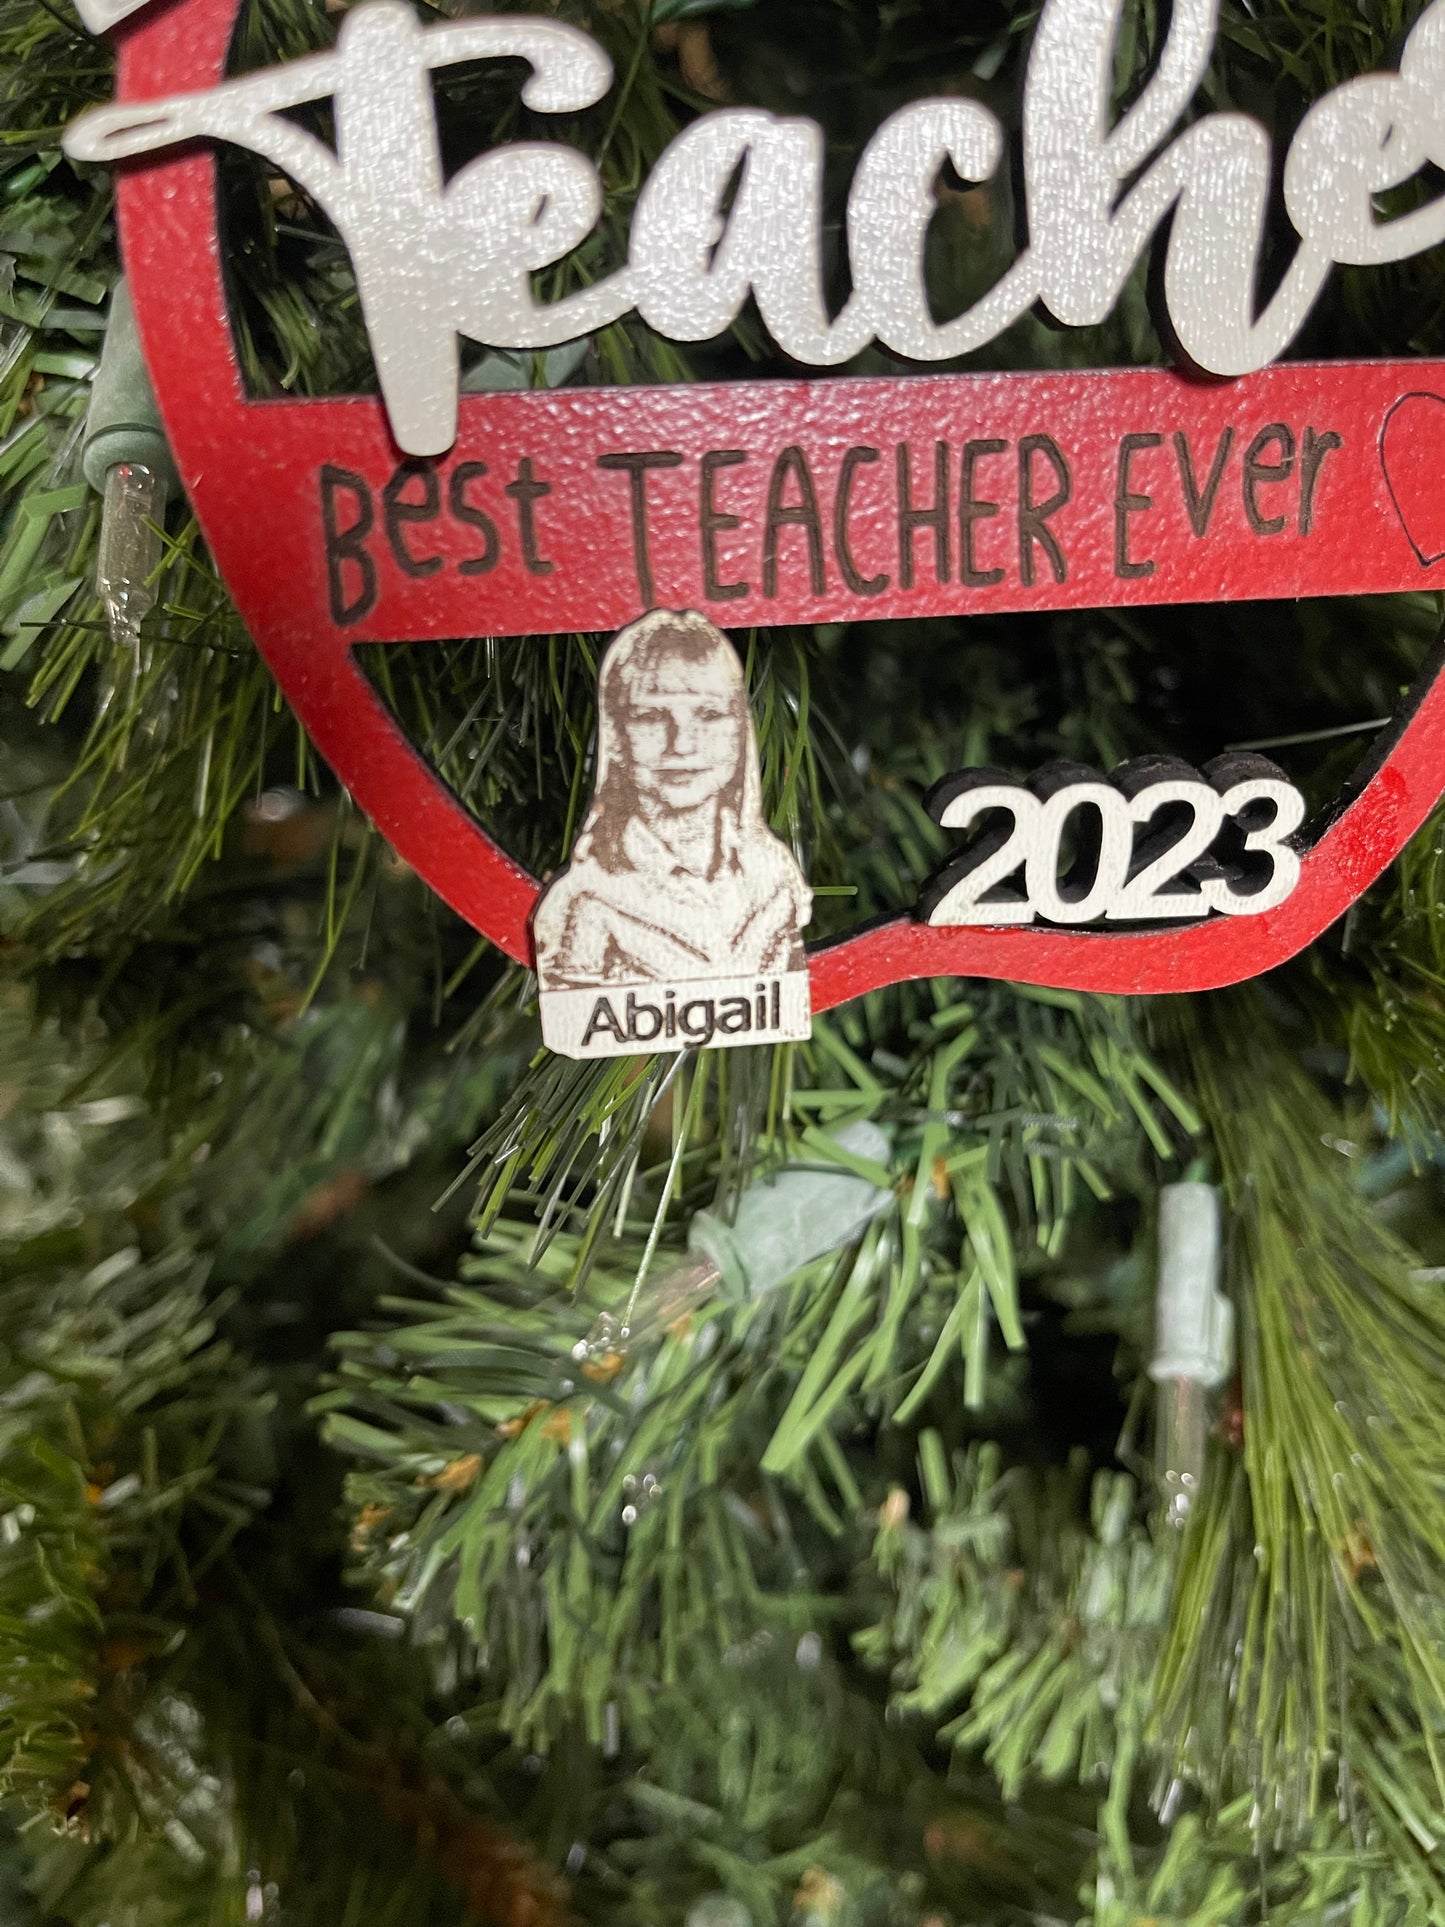 Teacher Ornament for Teacher Student Gift for Teacher Personalized Teacher Gift Ornament Class Picture from Student Elementary School Child